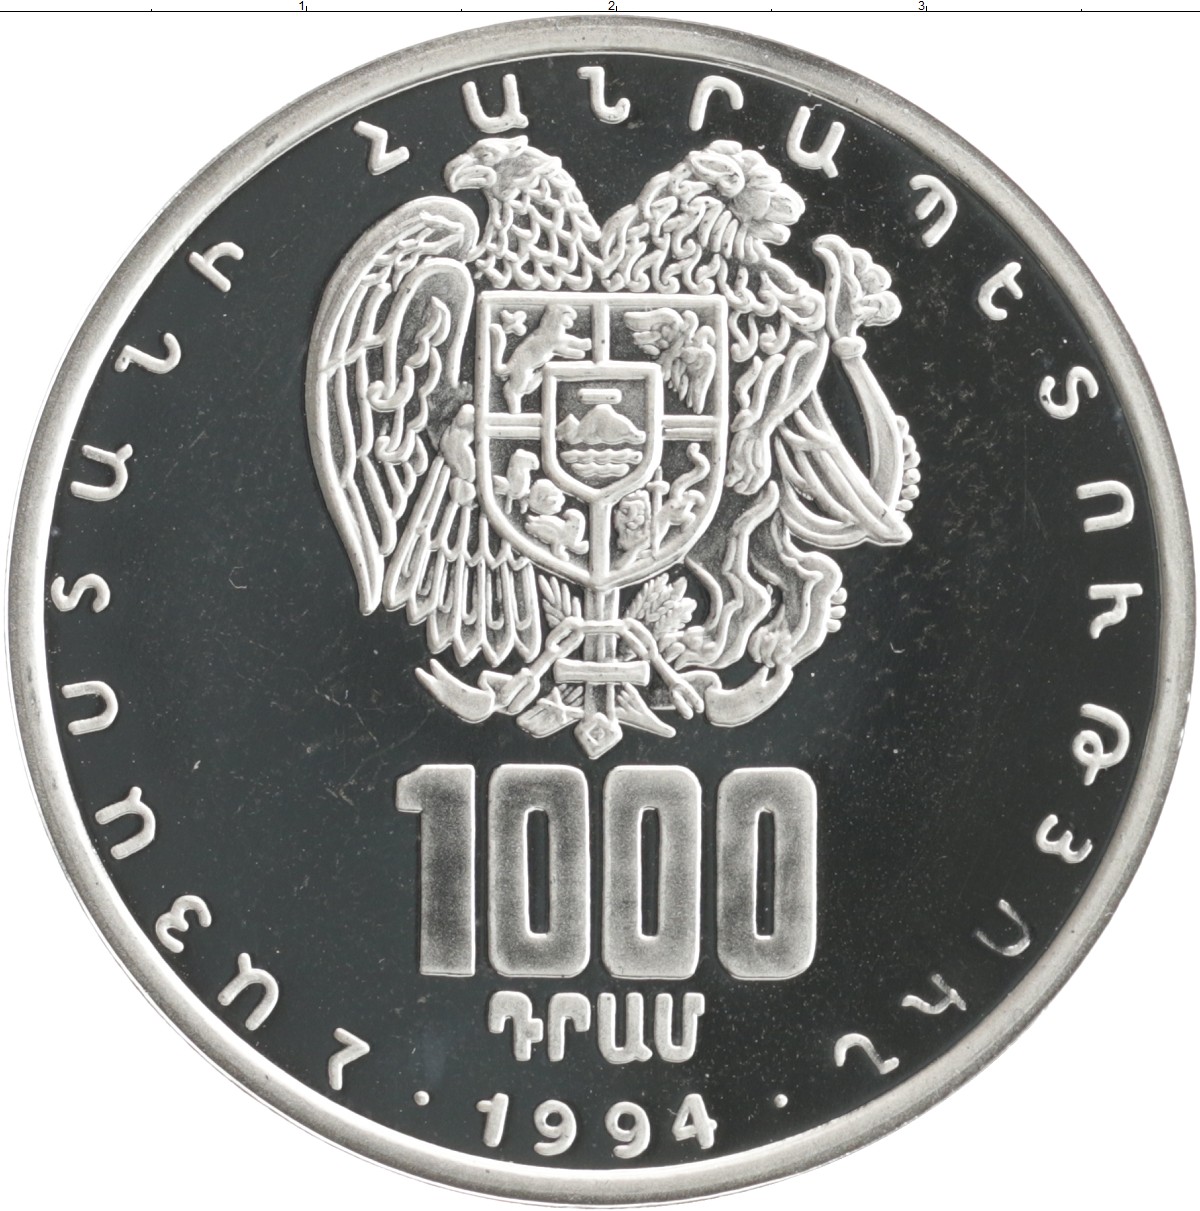 Рубли сколько стоит армения драм. 10 Драмов 1994 Армения. Монеты Армении 1994. Драмы монеты Армении. 1000 Драм.